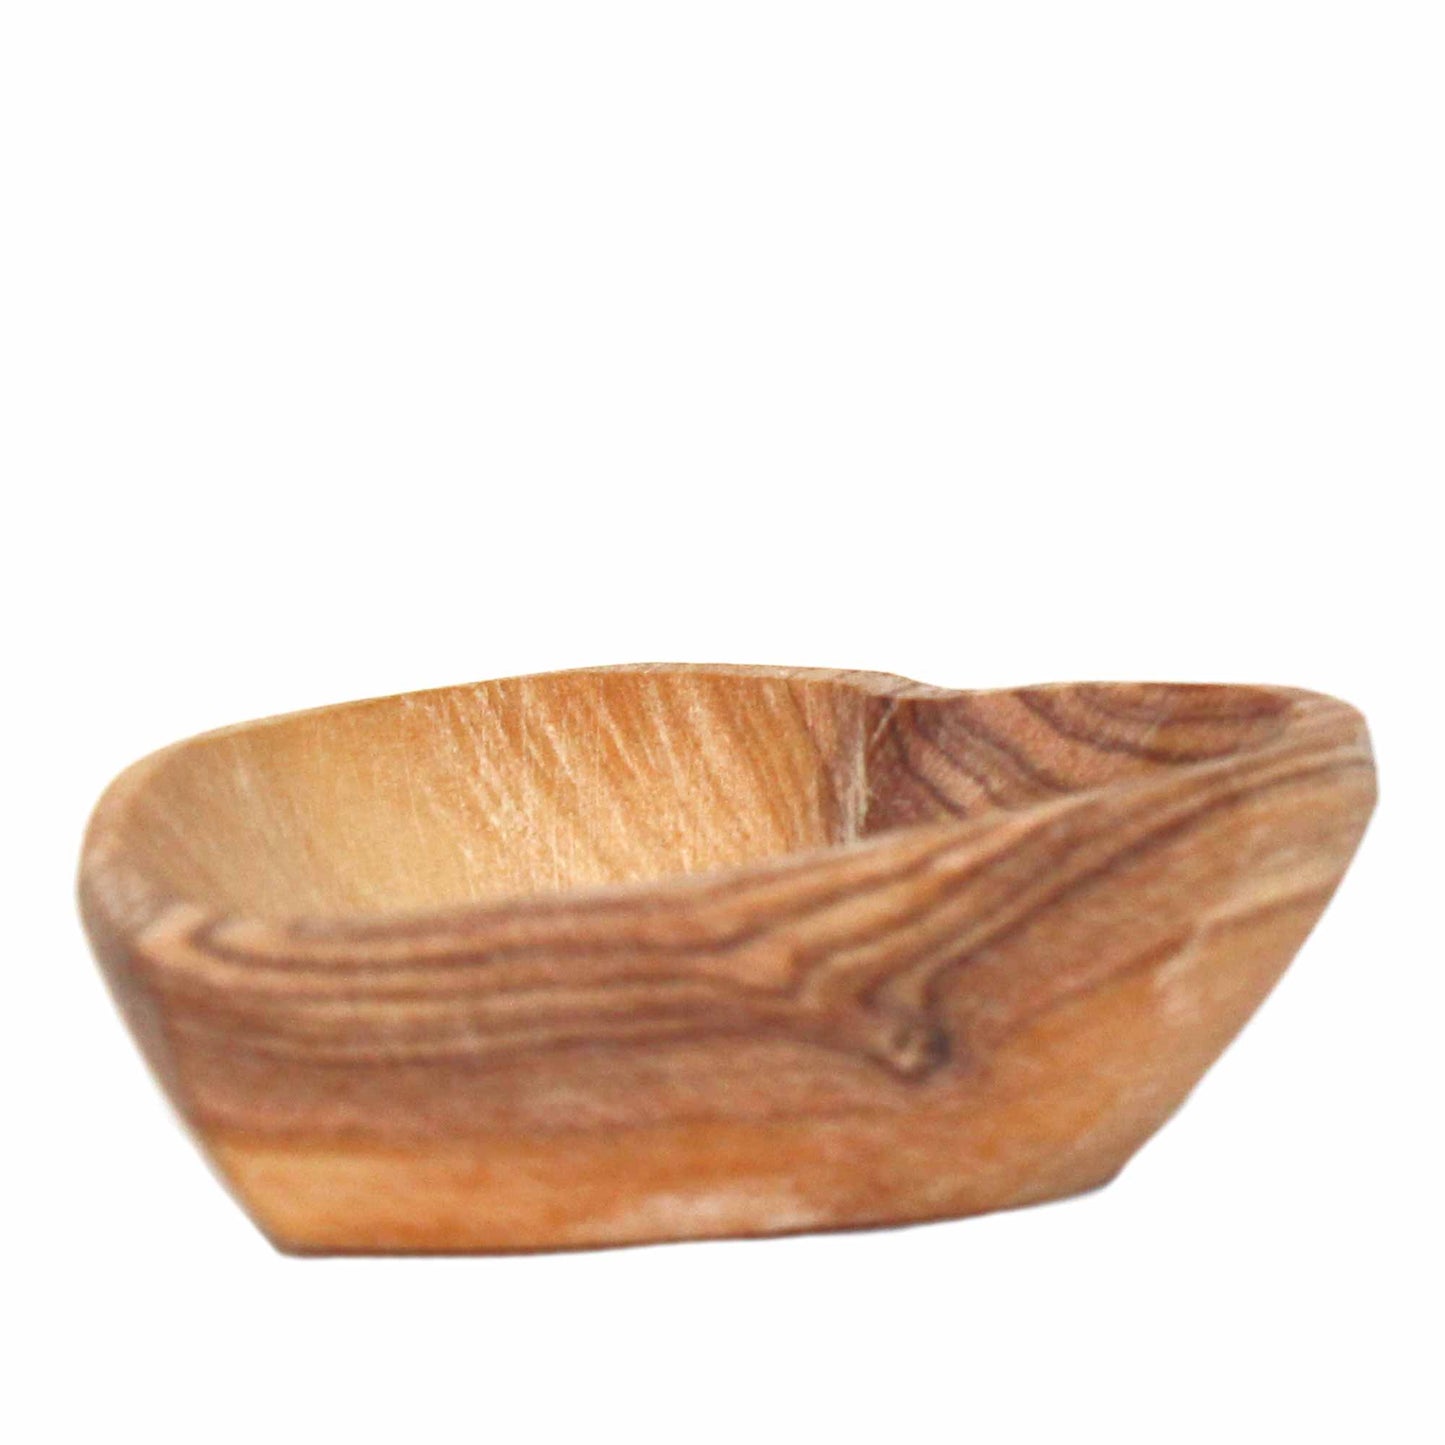 Cuencos pequeños con forma de corazón de madera de olivo - Juego de 2